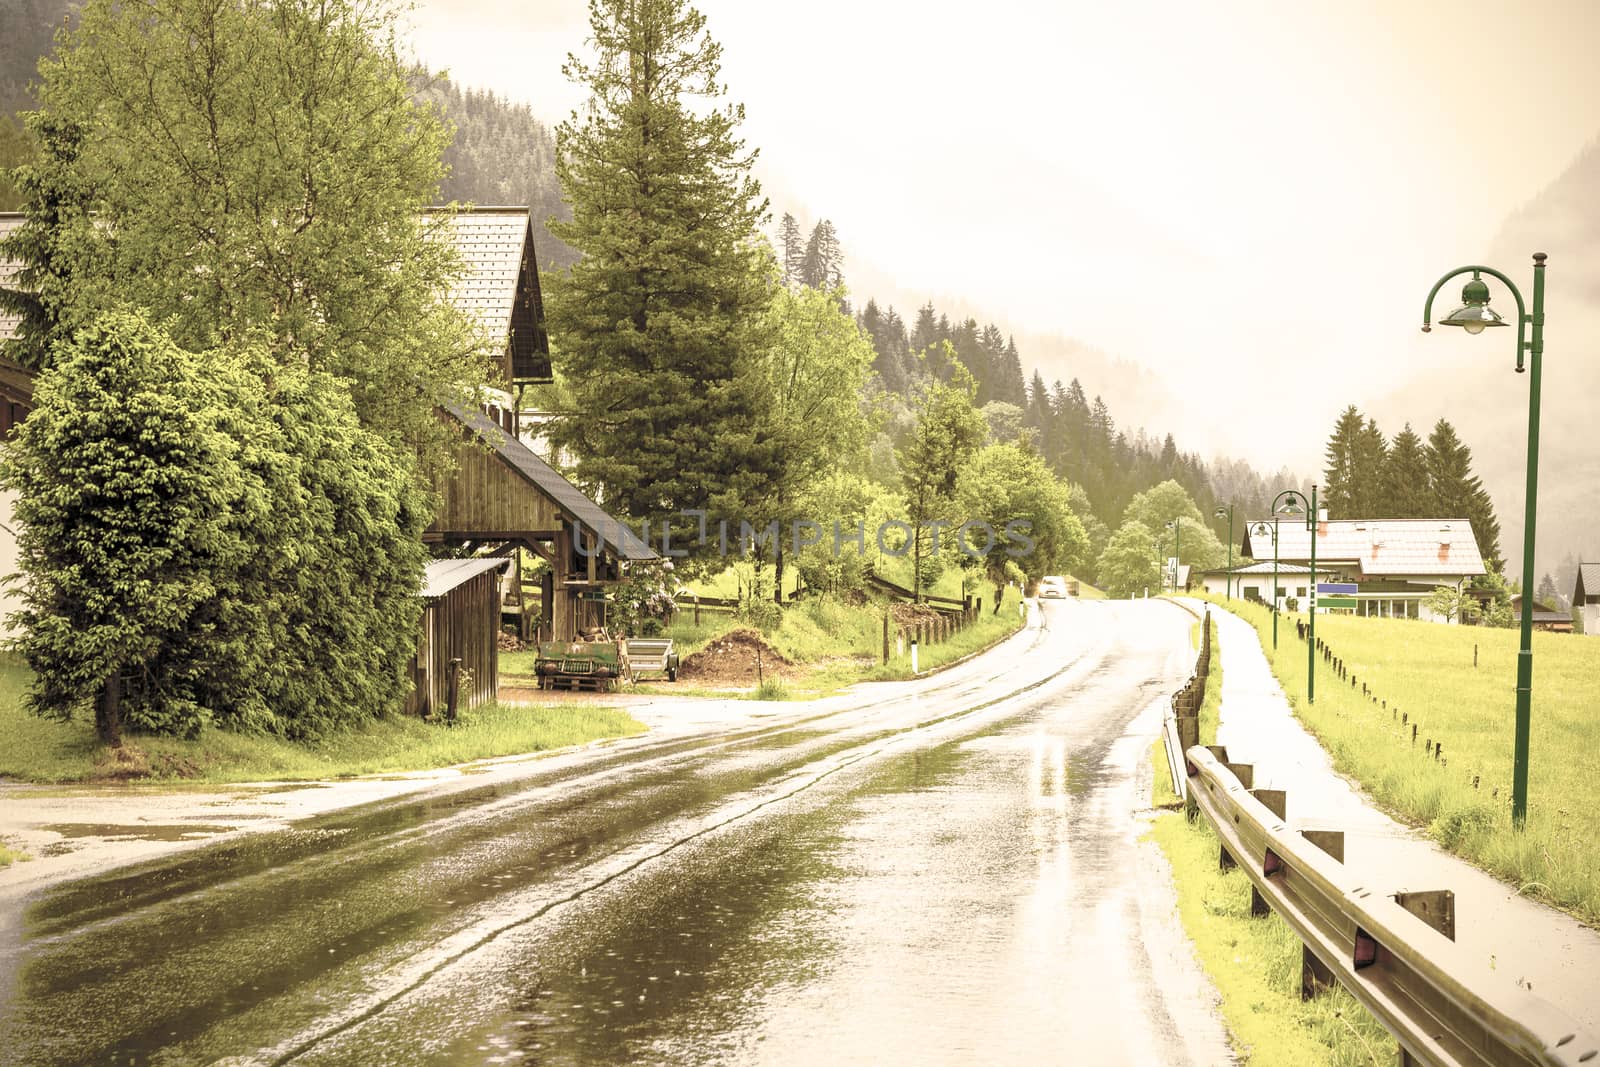 Rain in rural Austria by gkuna